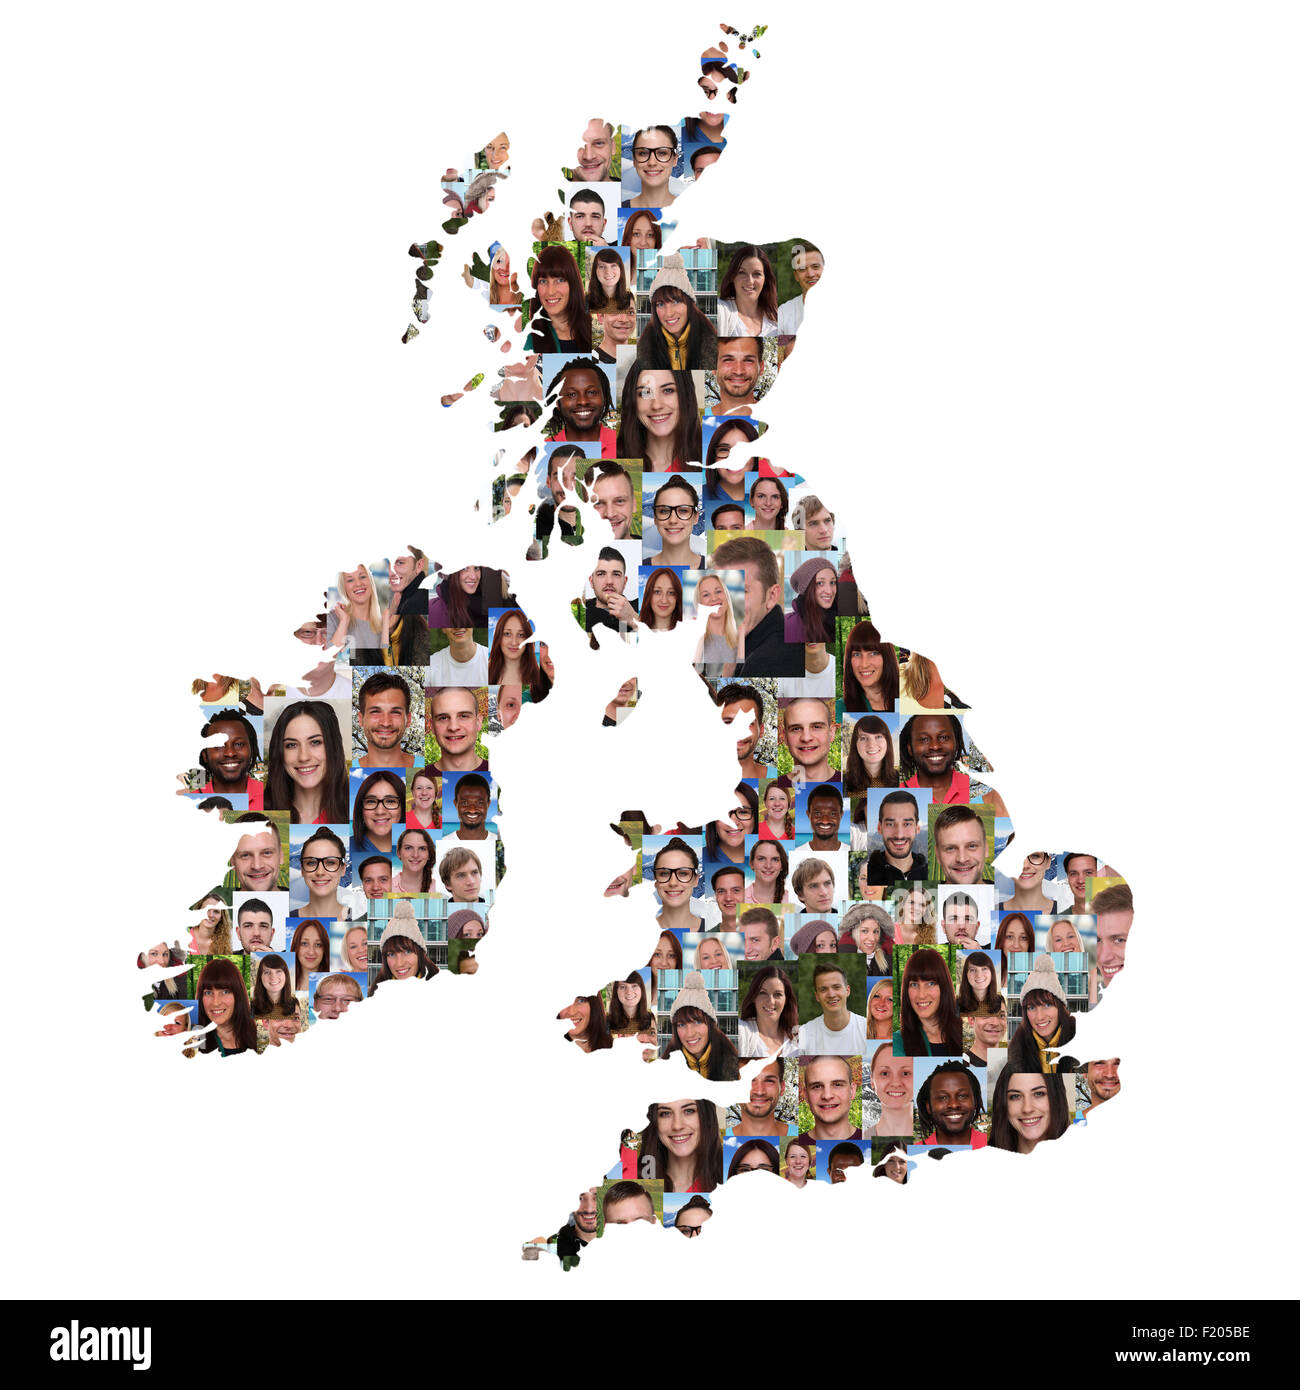 Gran Bretagna e Irlanda mappa gruppo multiculturale dei giovani diversità integrazione isolato Foto Stock